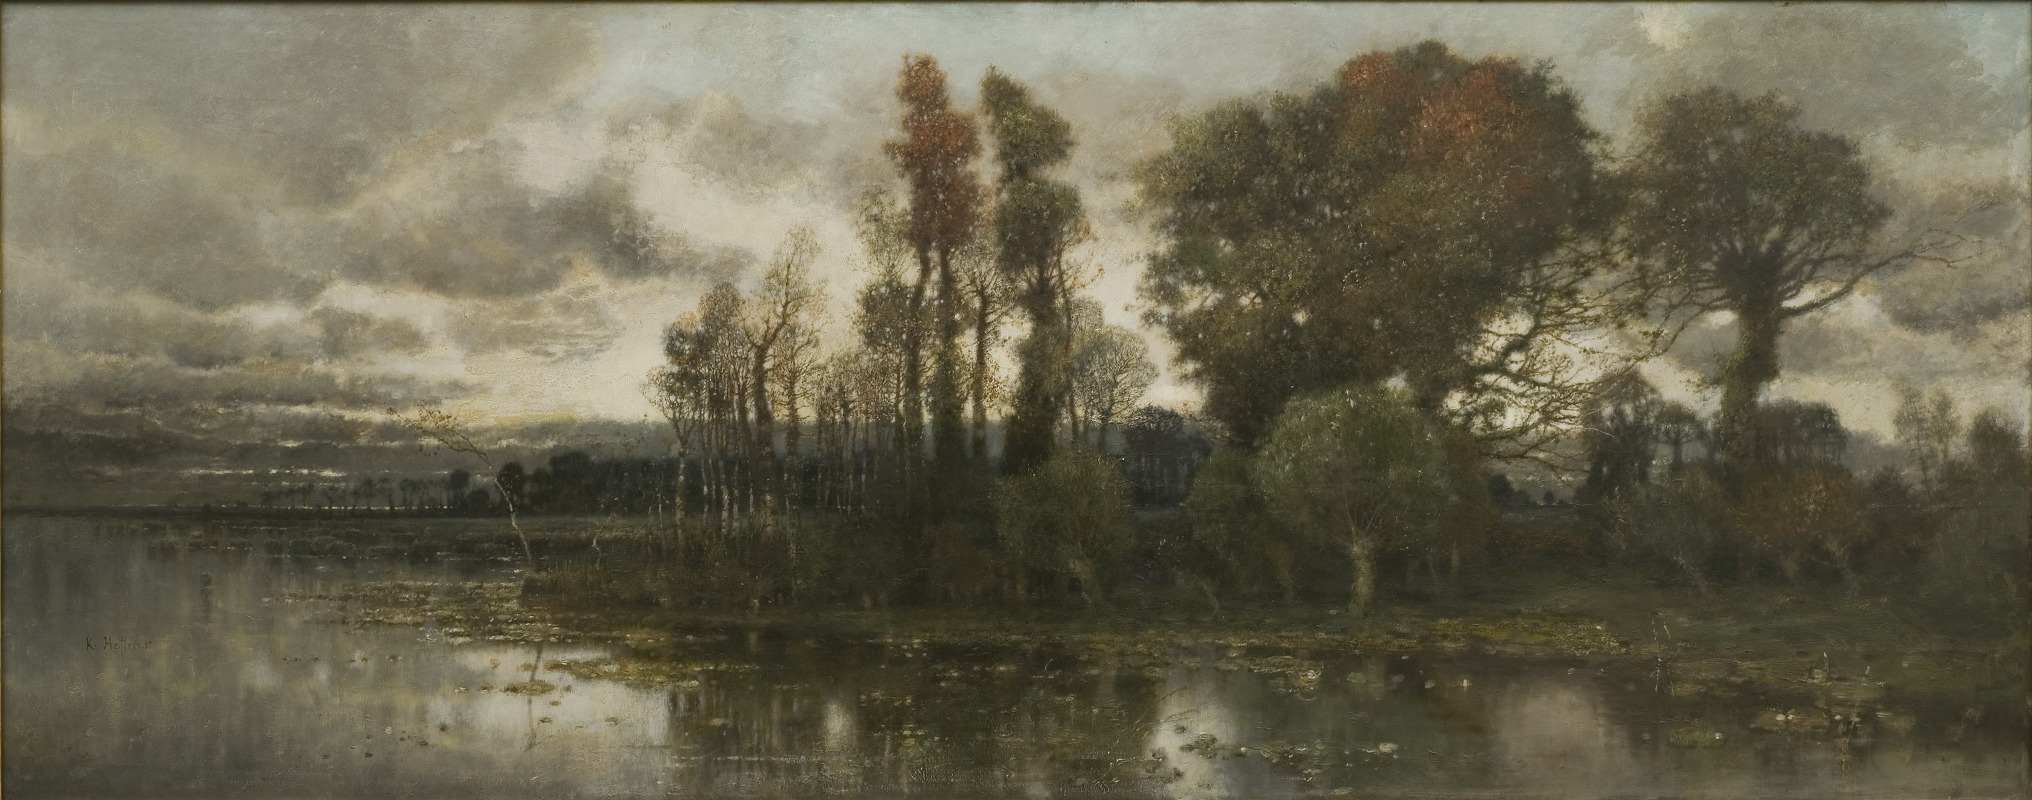 Karl Heffner - Autumn Landscape near Pavia